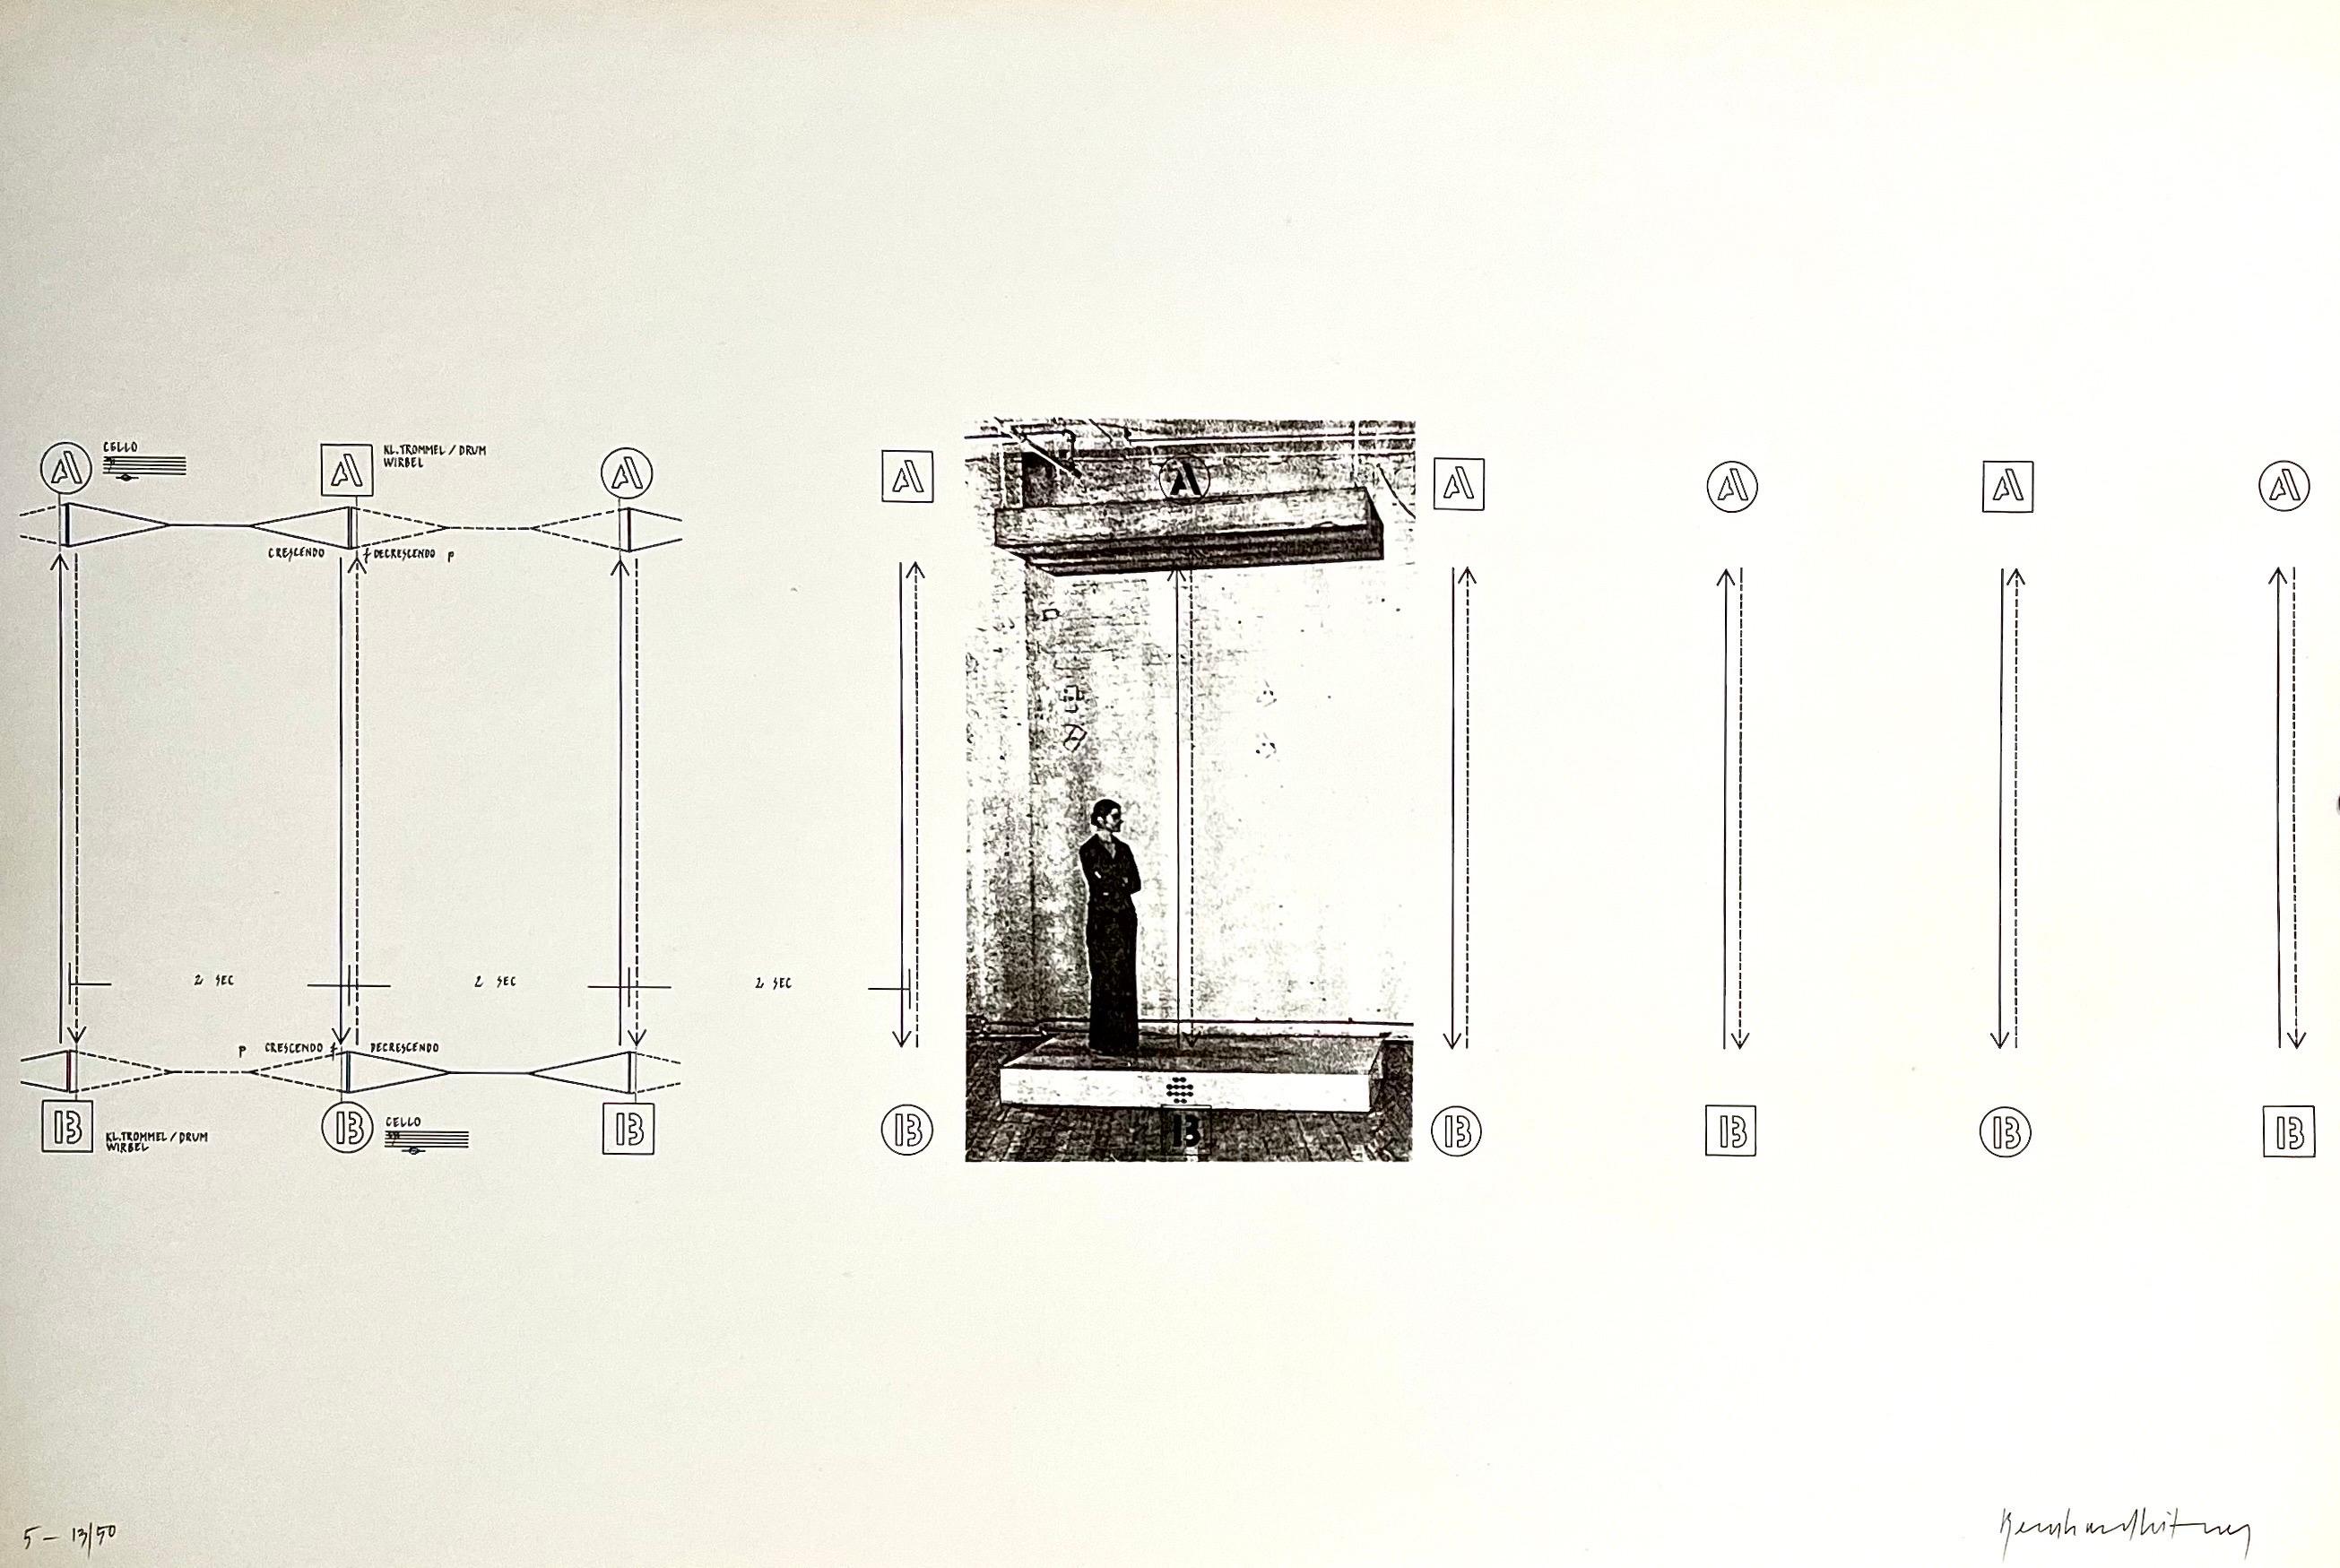 Bernhard Leitner, (Österreicher, 1938) 
Aus einer Mappe "Klang : Raum"  "Ton : Raum"
Selbstverlag des Künstlers, 1975/1976, 
Limitierte Auflage von 50 Stück
Vom Künstler mit Bleistift signiert.

Nach Angaben seiner Galerie handelt es sich um ein